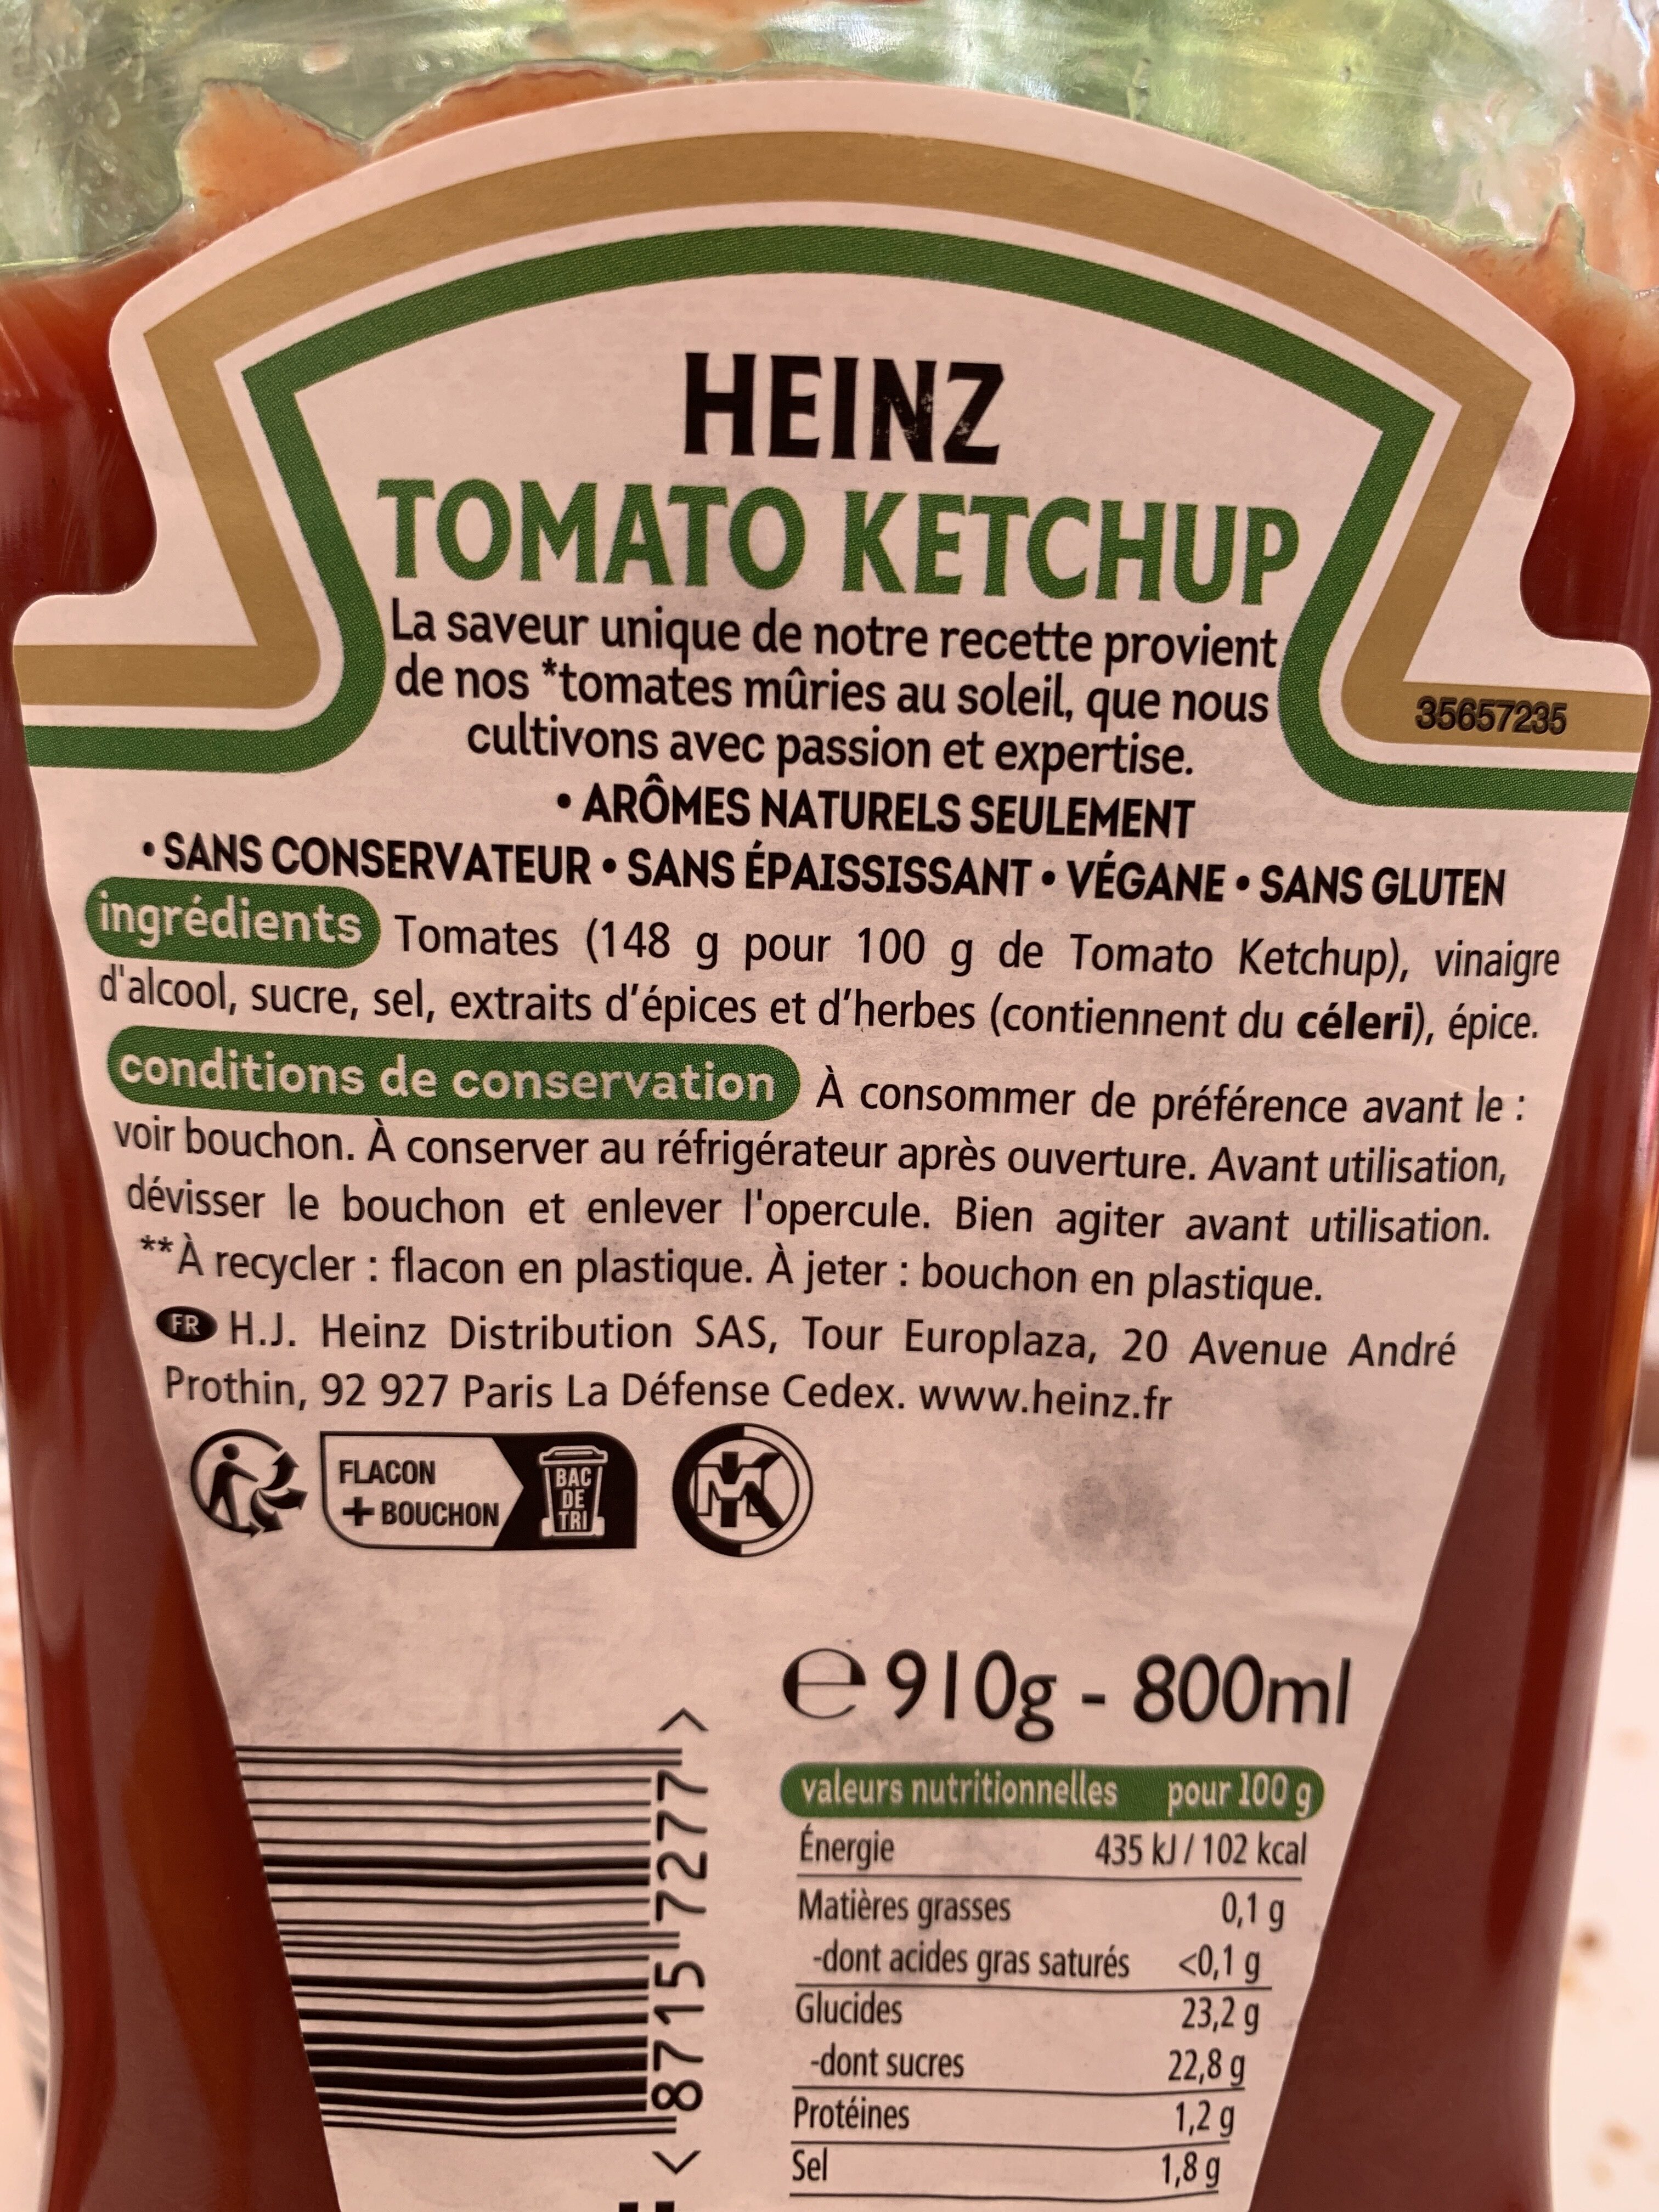 Tomato Ketchup 910 g flacon - Ingrediënten